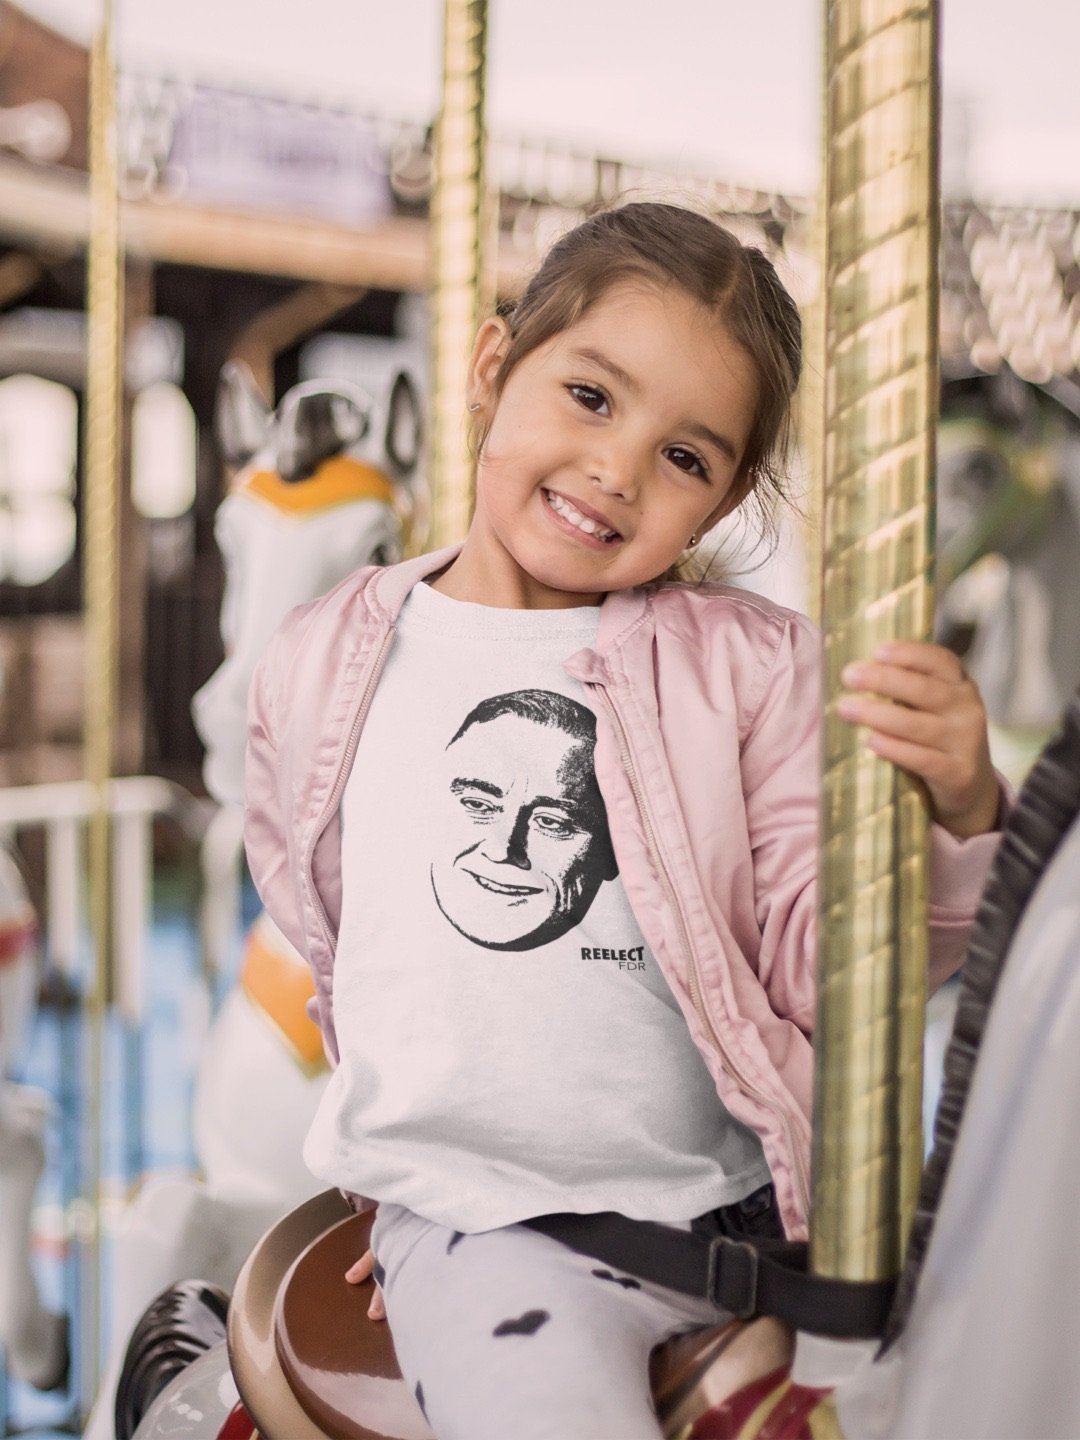 A New Deal Toddler/Kids Tee Kids Shirt Reelect FDR 